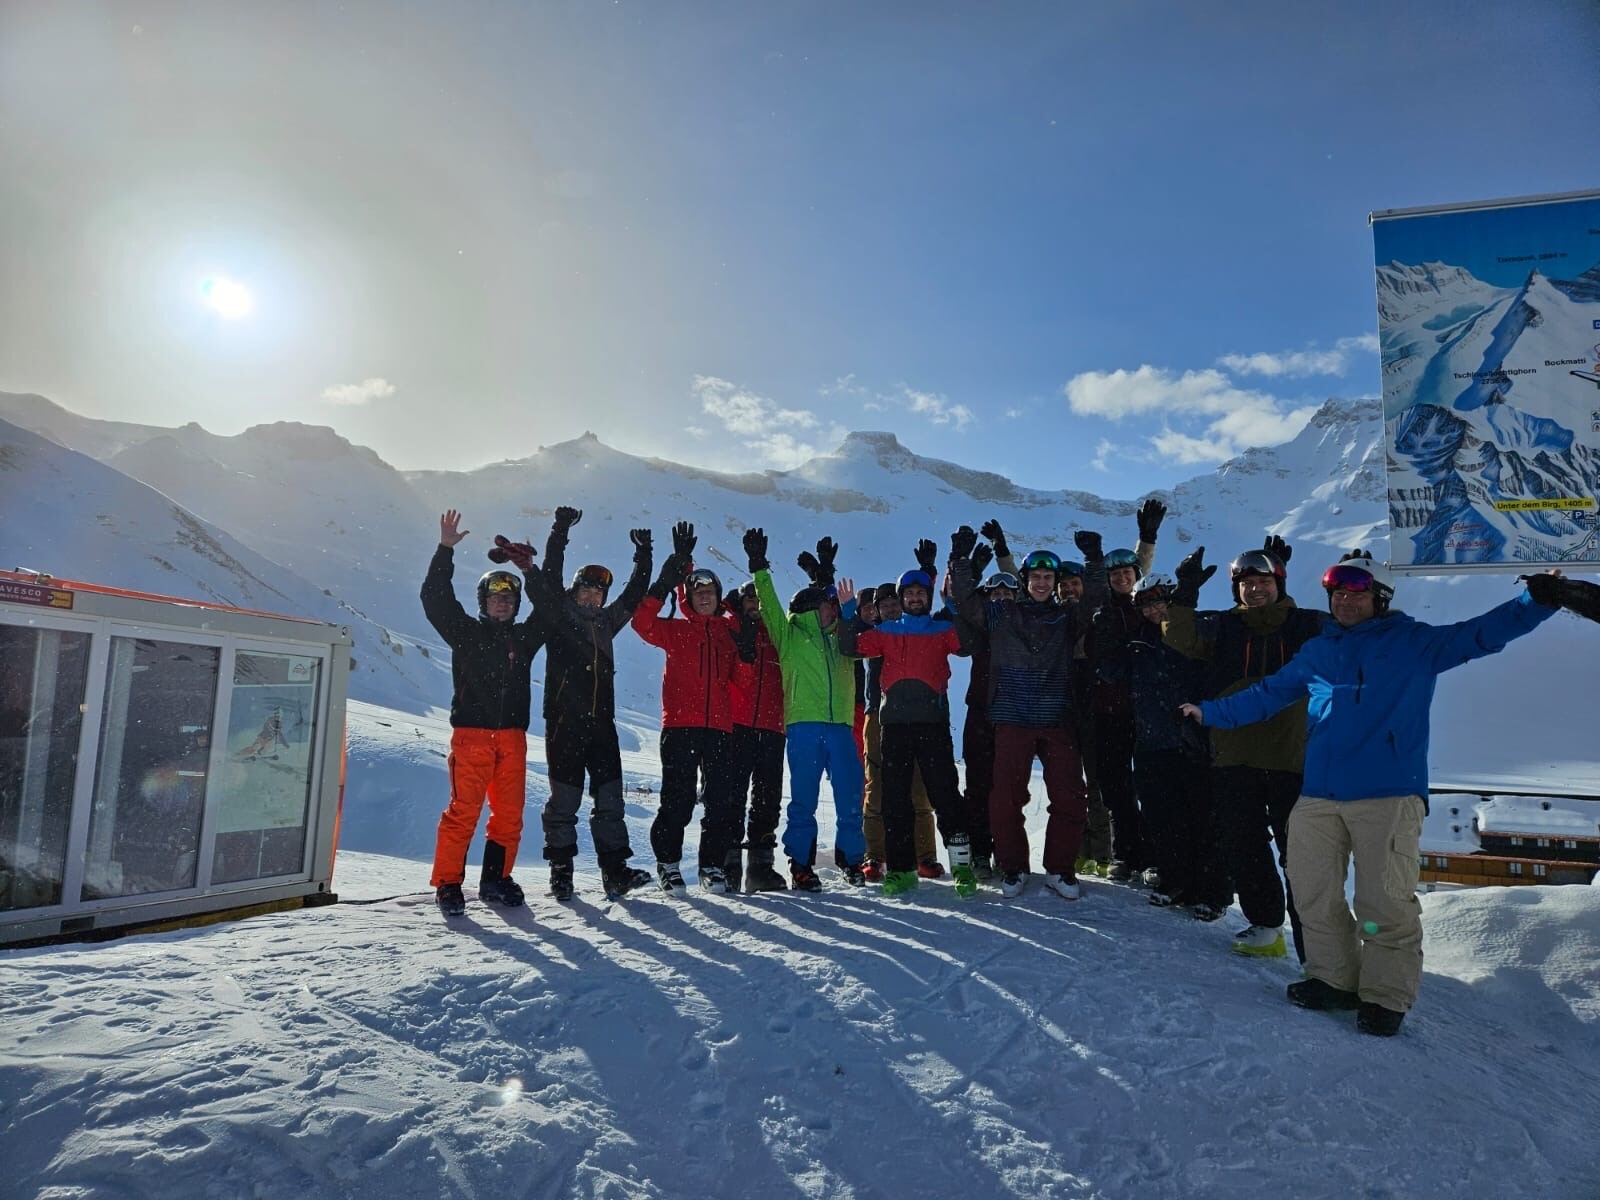 Gestern hatten einige Mitarbeitende einen fantastischen Skitag auf der Engstligen Alp. Das Wetter war schön (auch wenn es teils ziemlich windig war), die Pisten waren gut präpariert und alle hatten eine grossartige Zeit. Es war eine willkommene Abwechslung vom Arbeitsalltag und alle genossen die frische Bergluft.